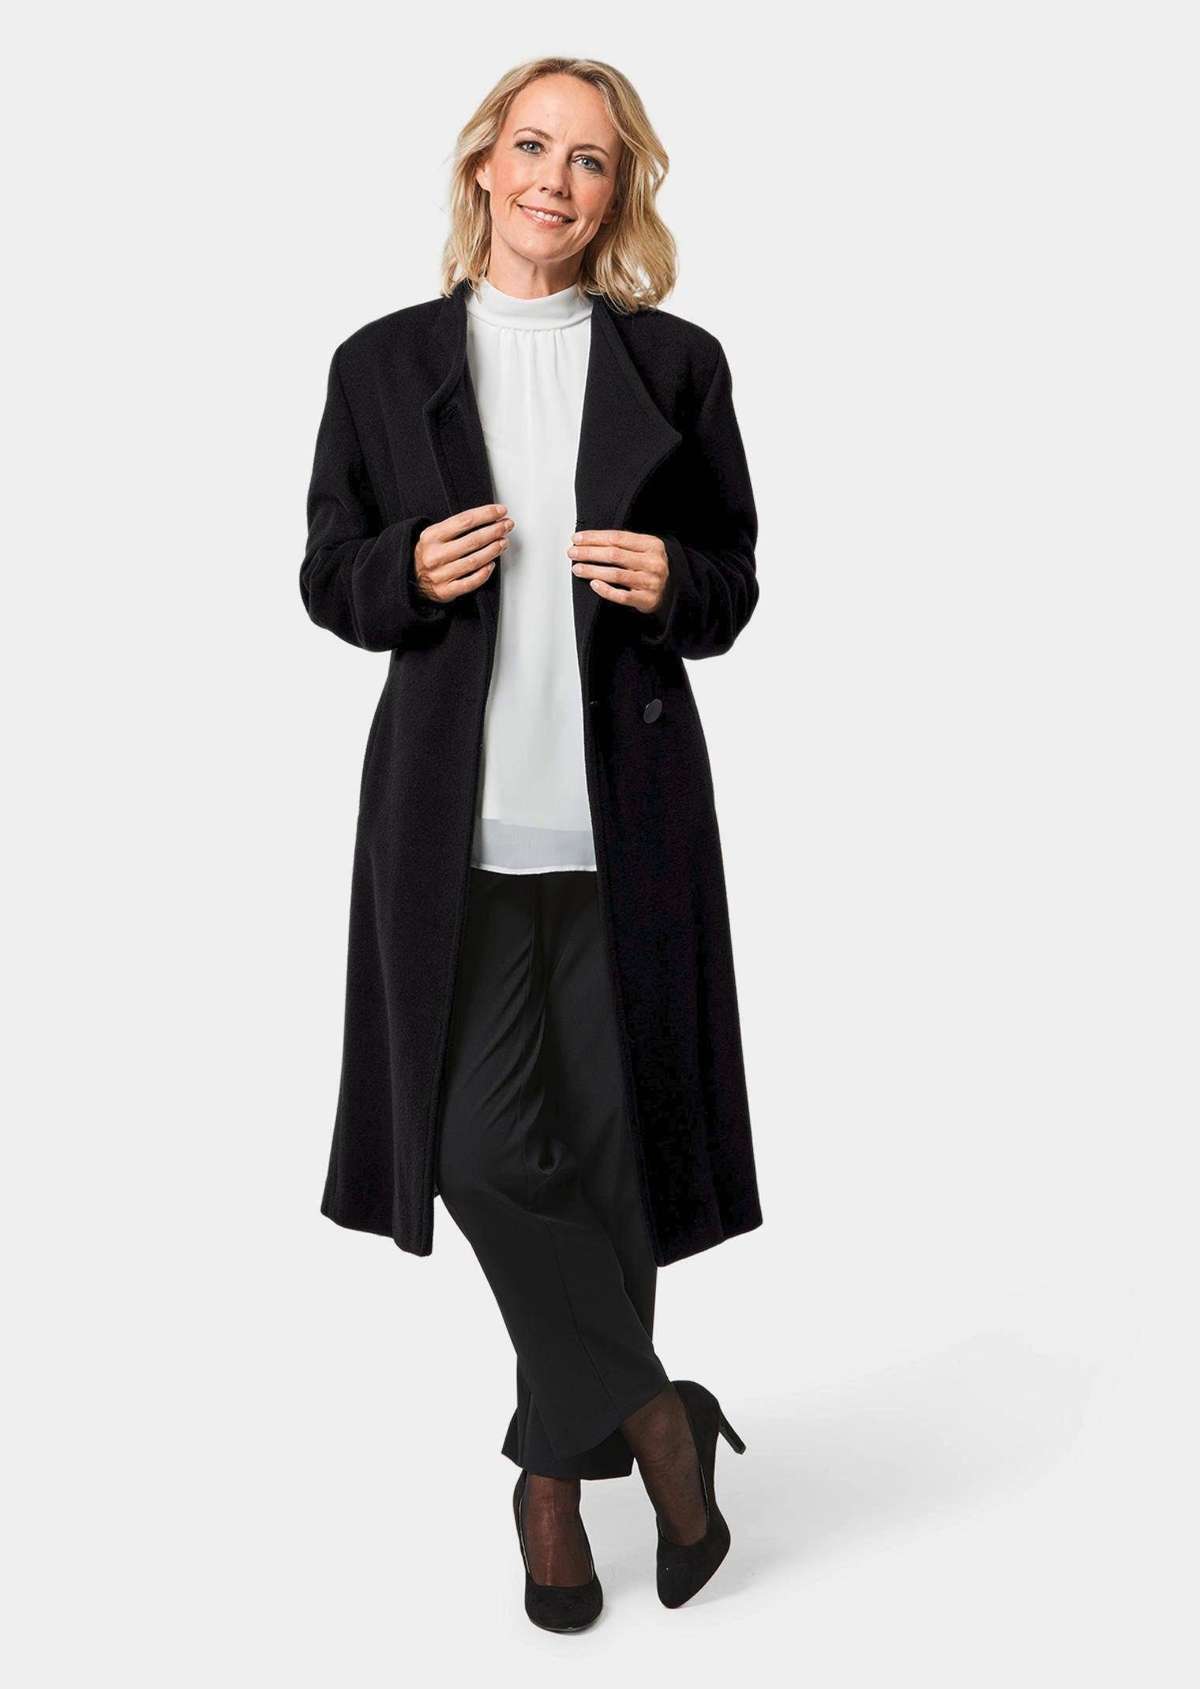 Полупальто маленького размера: утепляющее шерстяное пальто